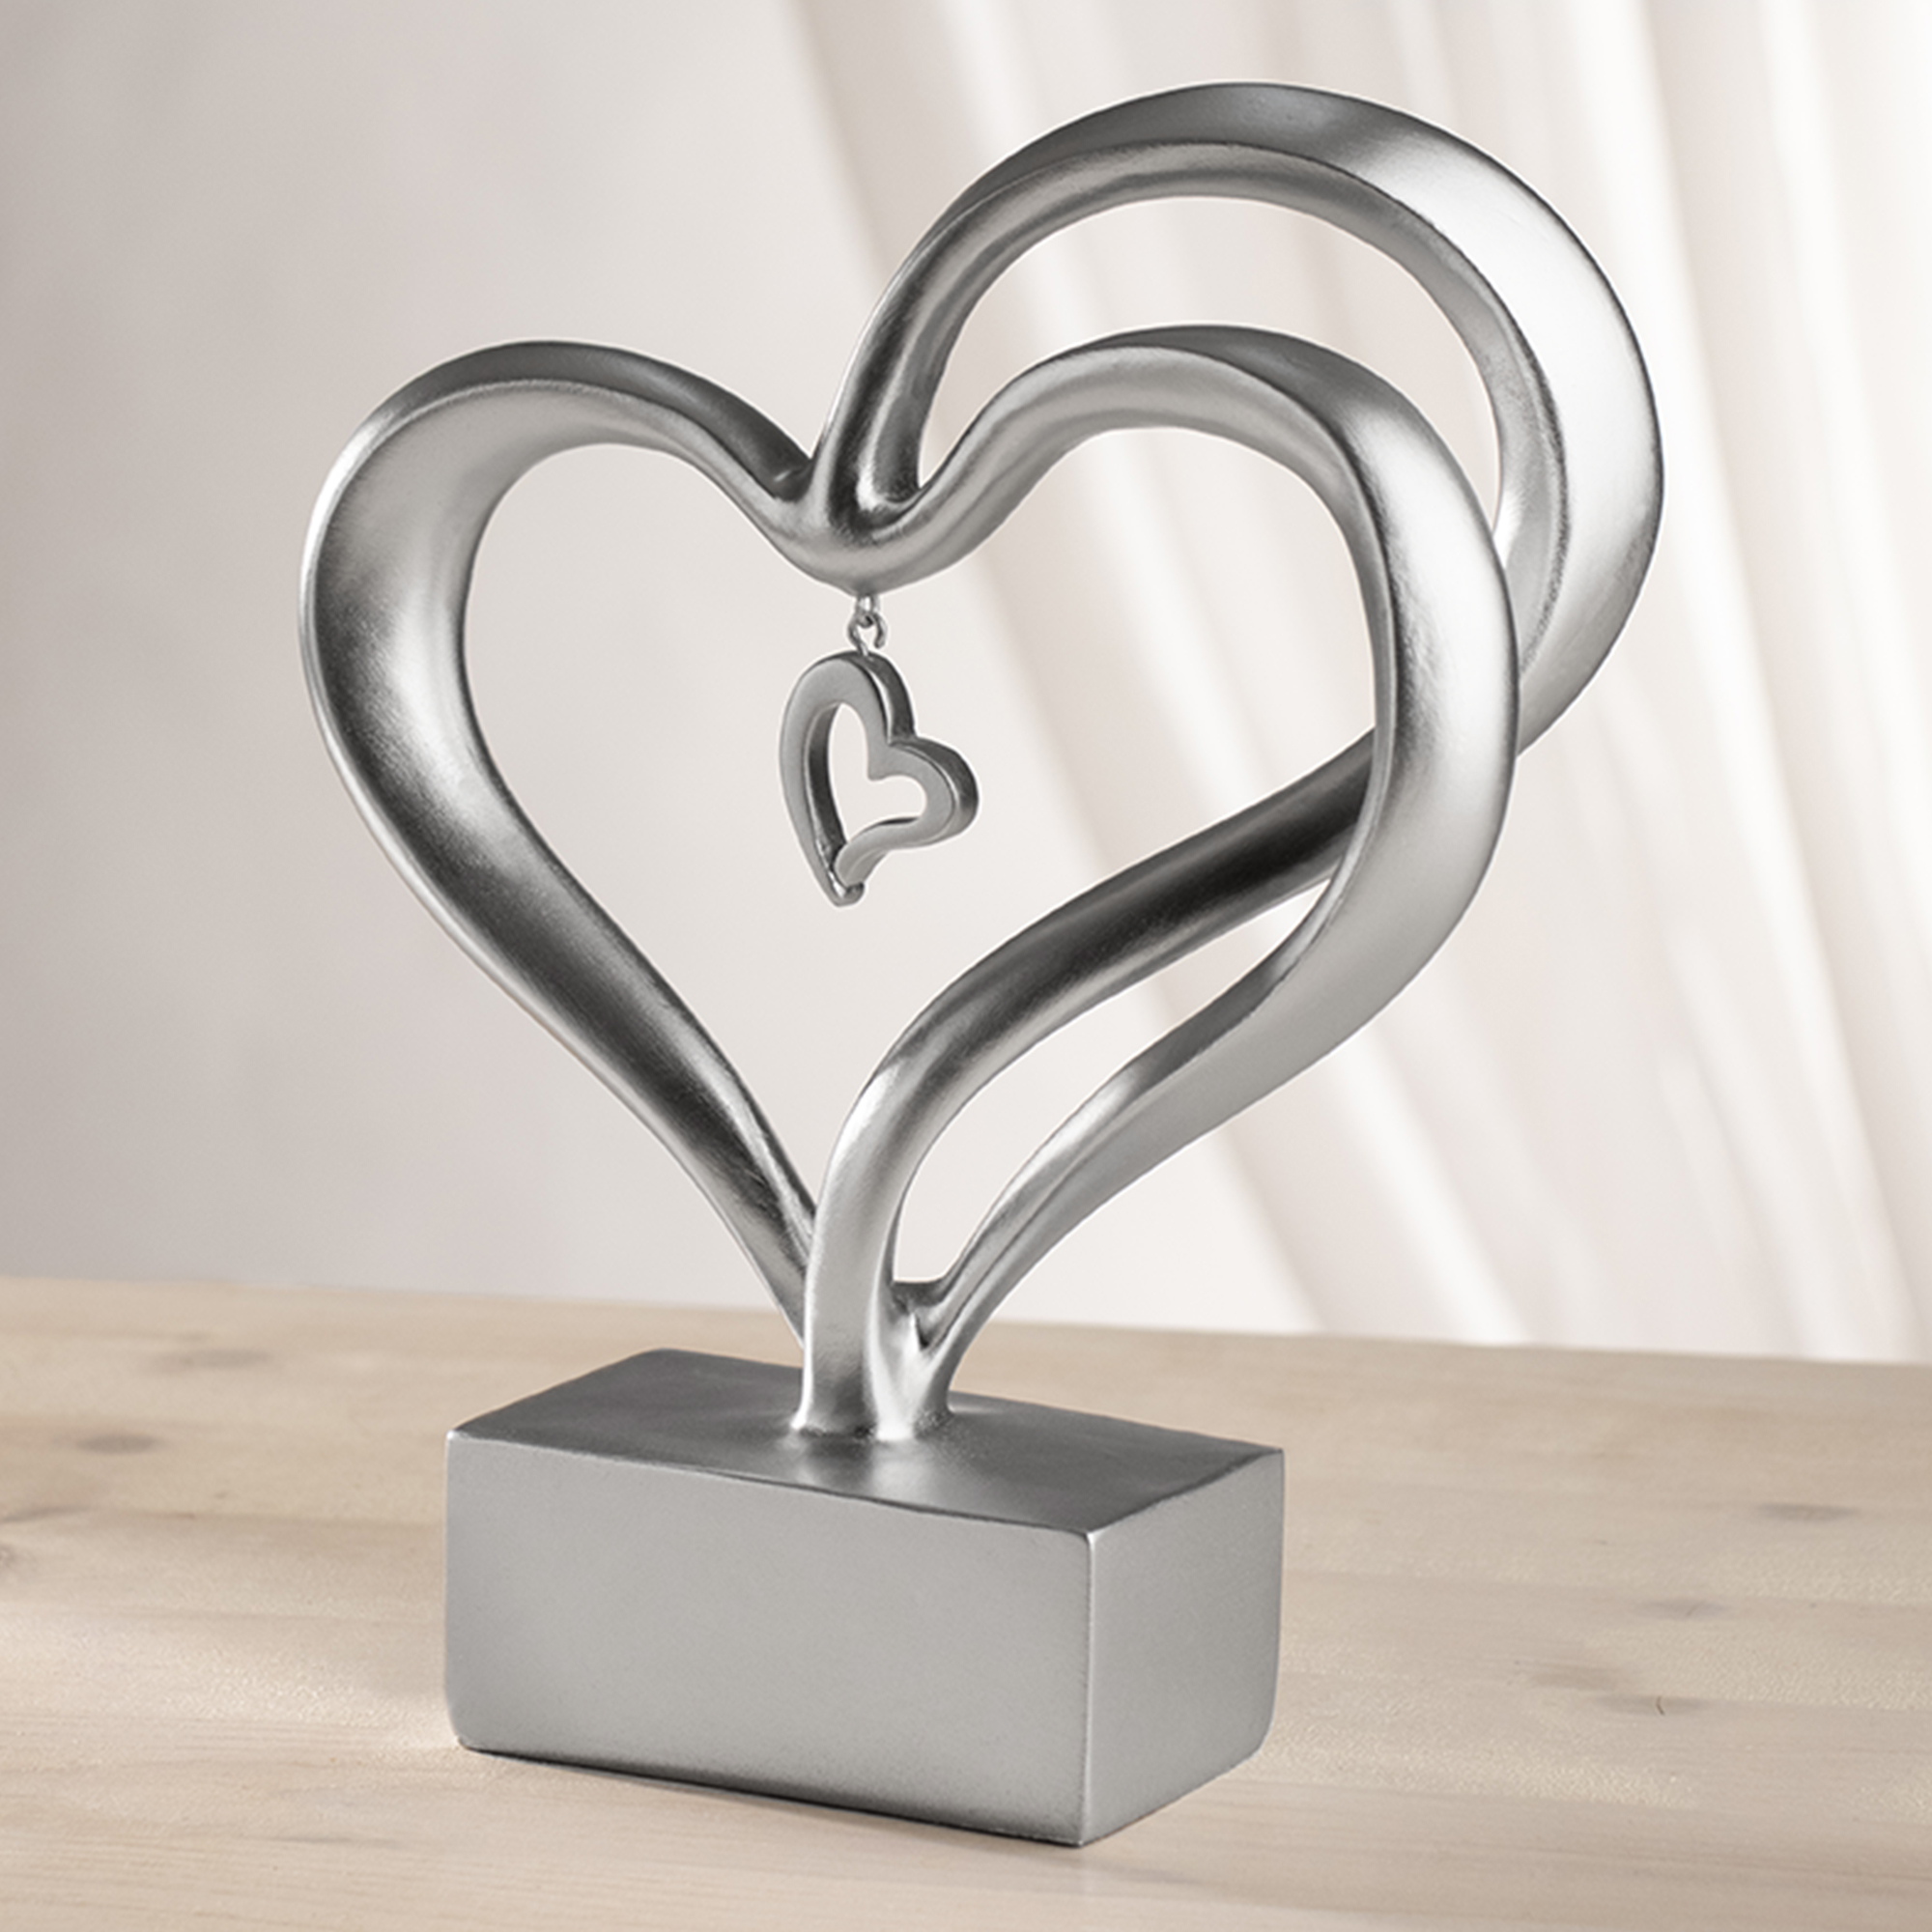 Lifestyle & More Moderne Deko Skulptur mit silbernem Herz aus Keramik weiß/Silber Höhe 20 cm Breite 22 cm